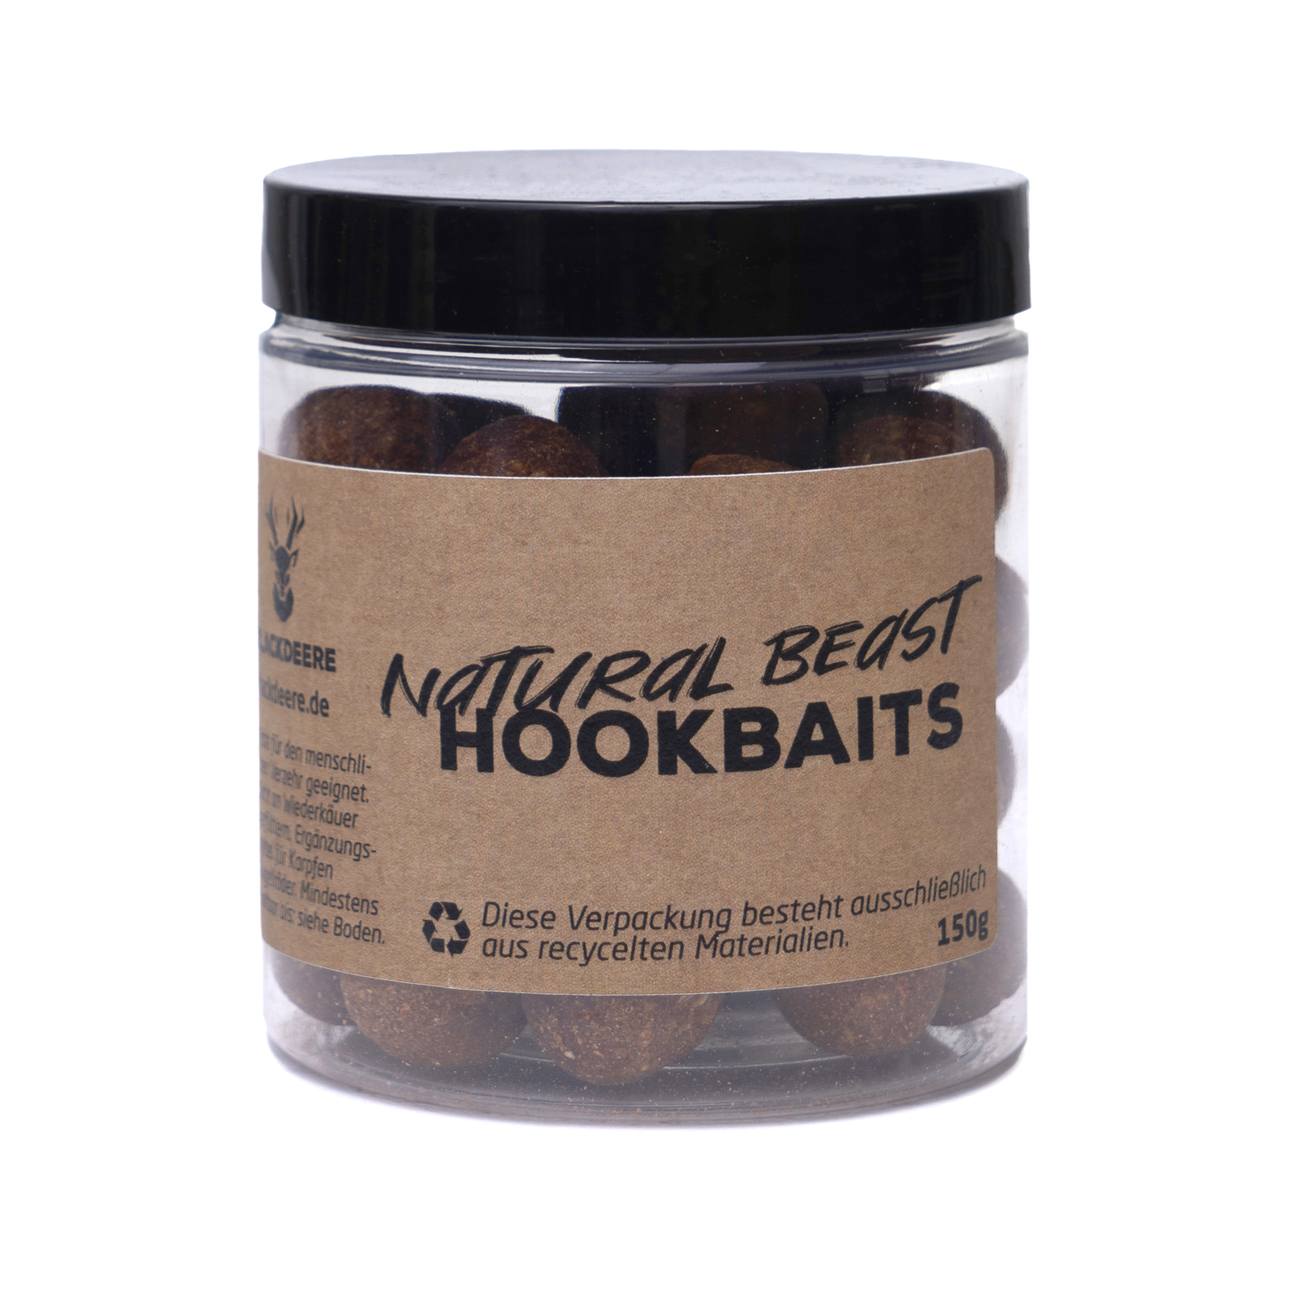 Blackdeere-Natural-Beast-Hookbaits-2